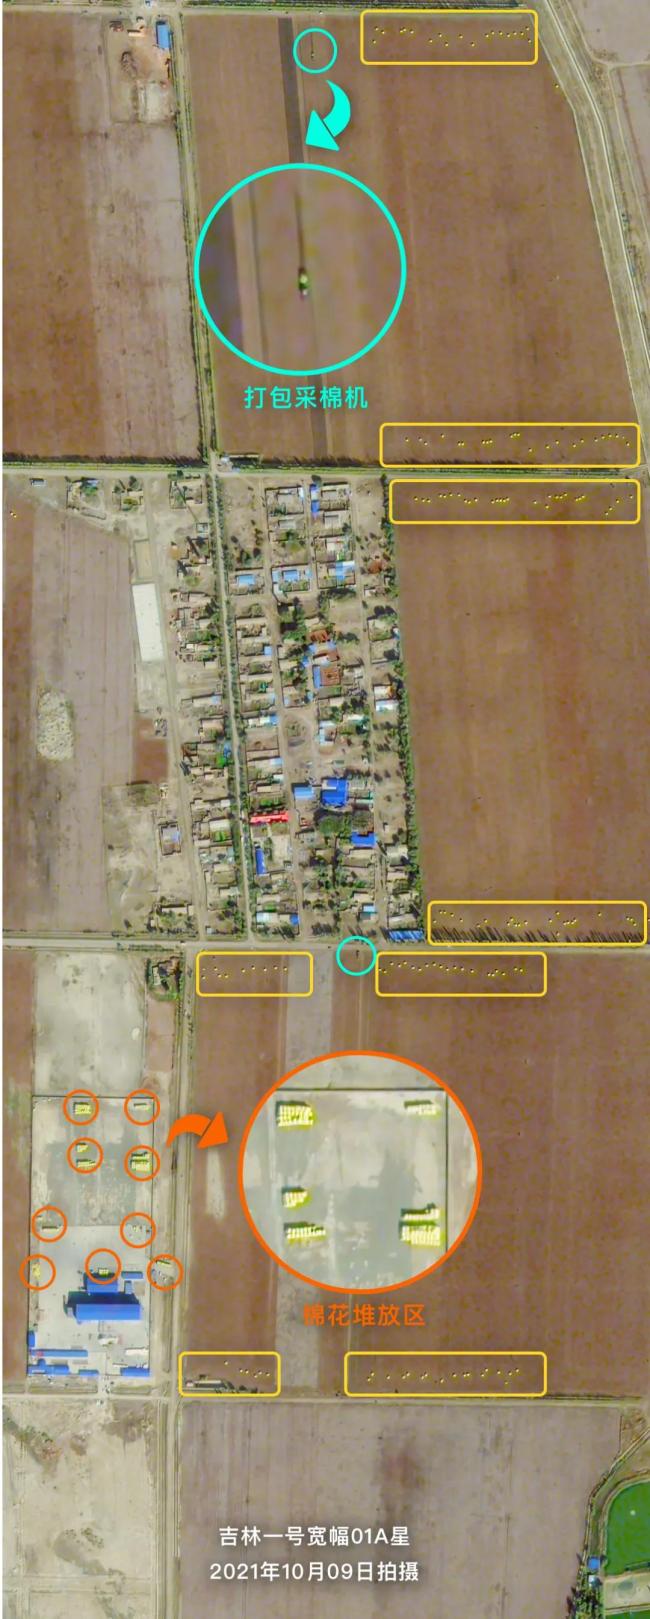 新疆棉花大丰收 卫星图直击“机械化”现场